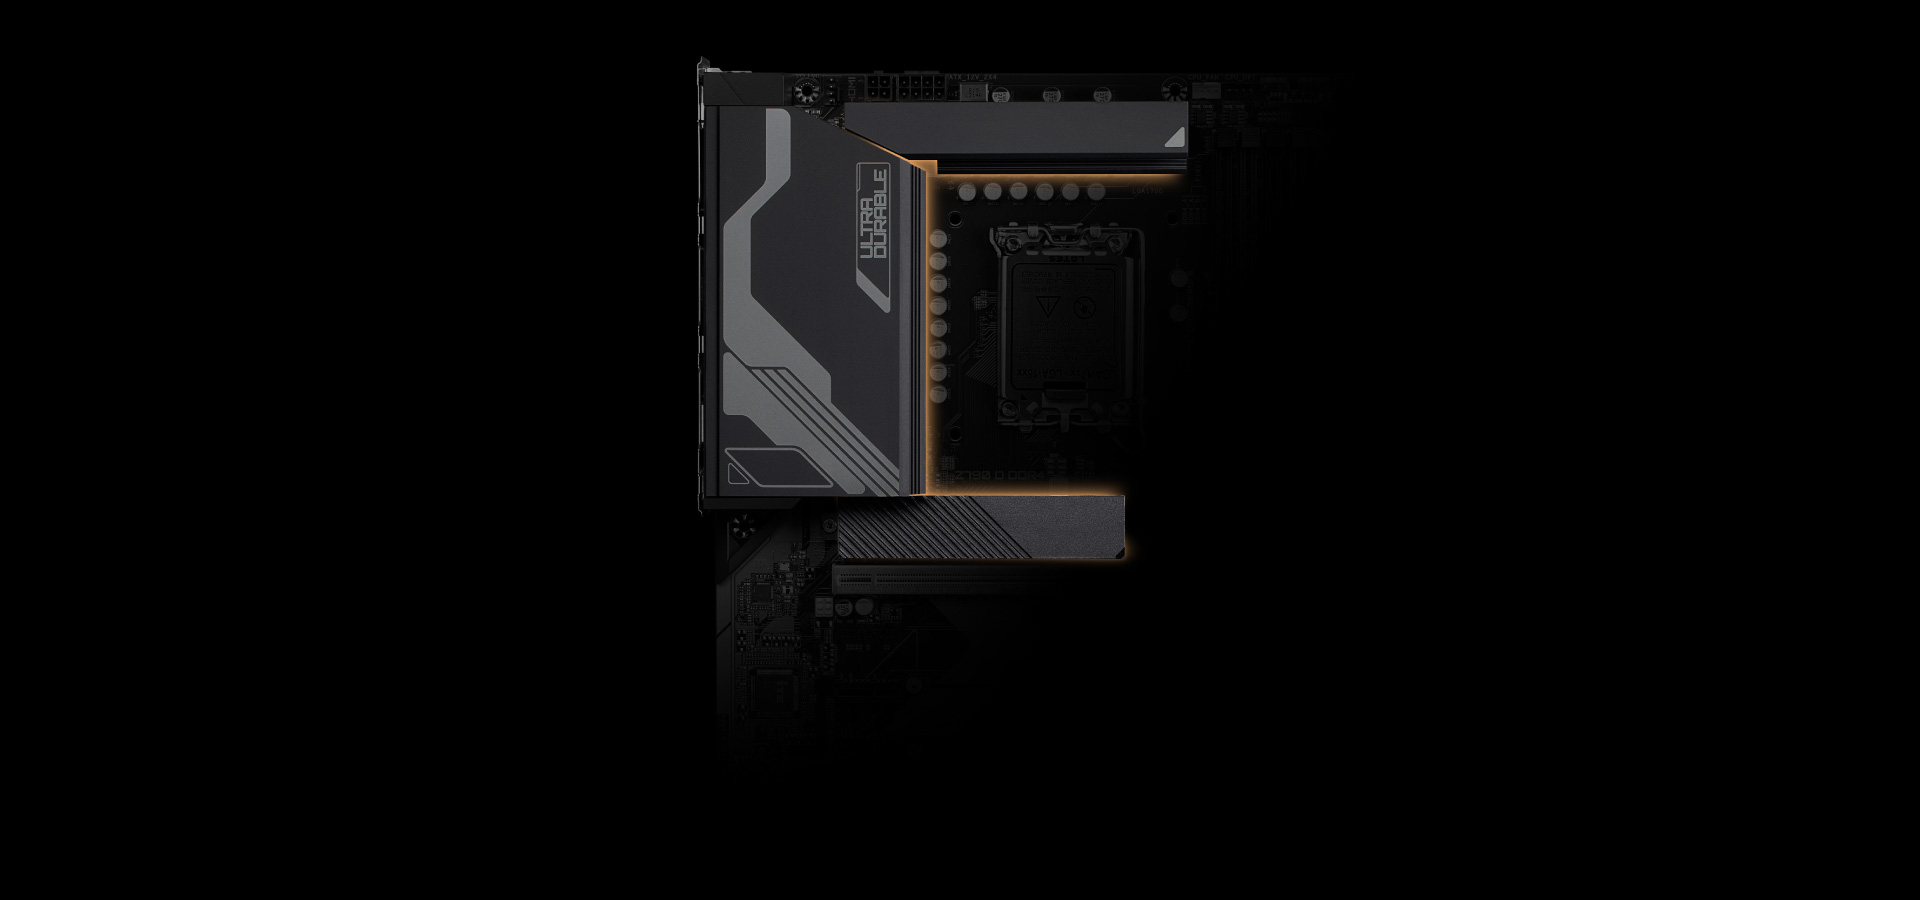 Z790 D DDR4 (rev. 1.0) Key Features | Motherboard - GIGABYTE Global